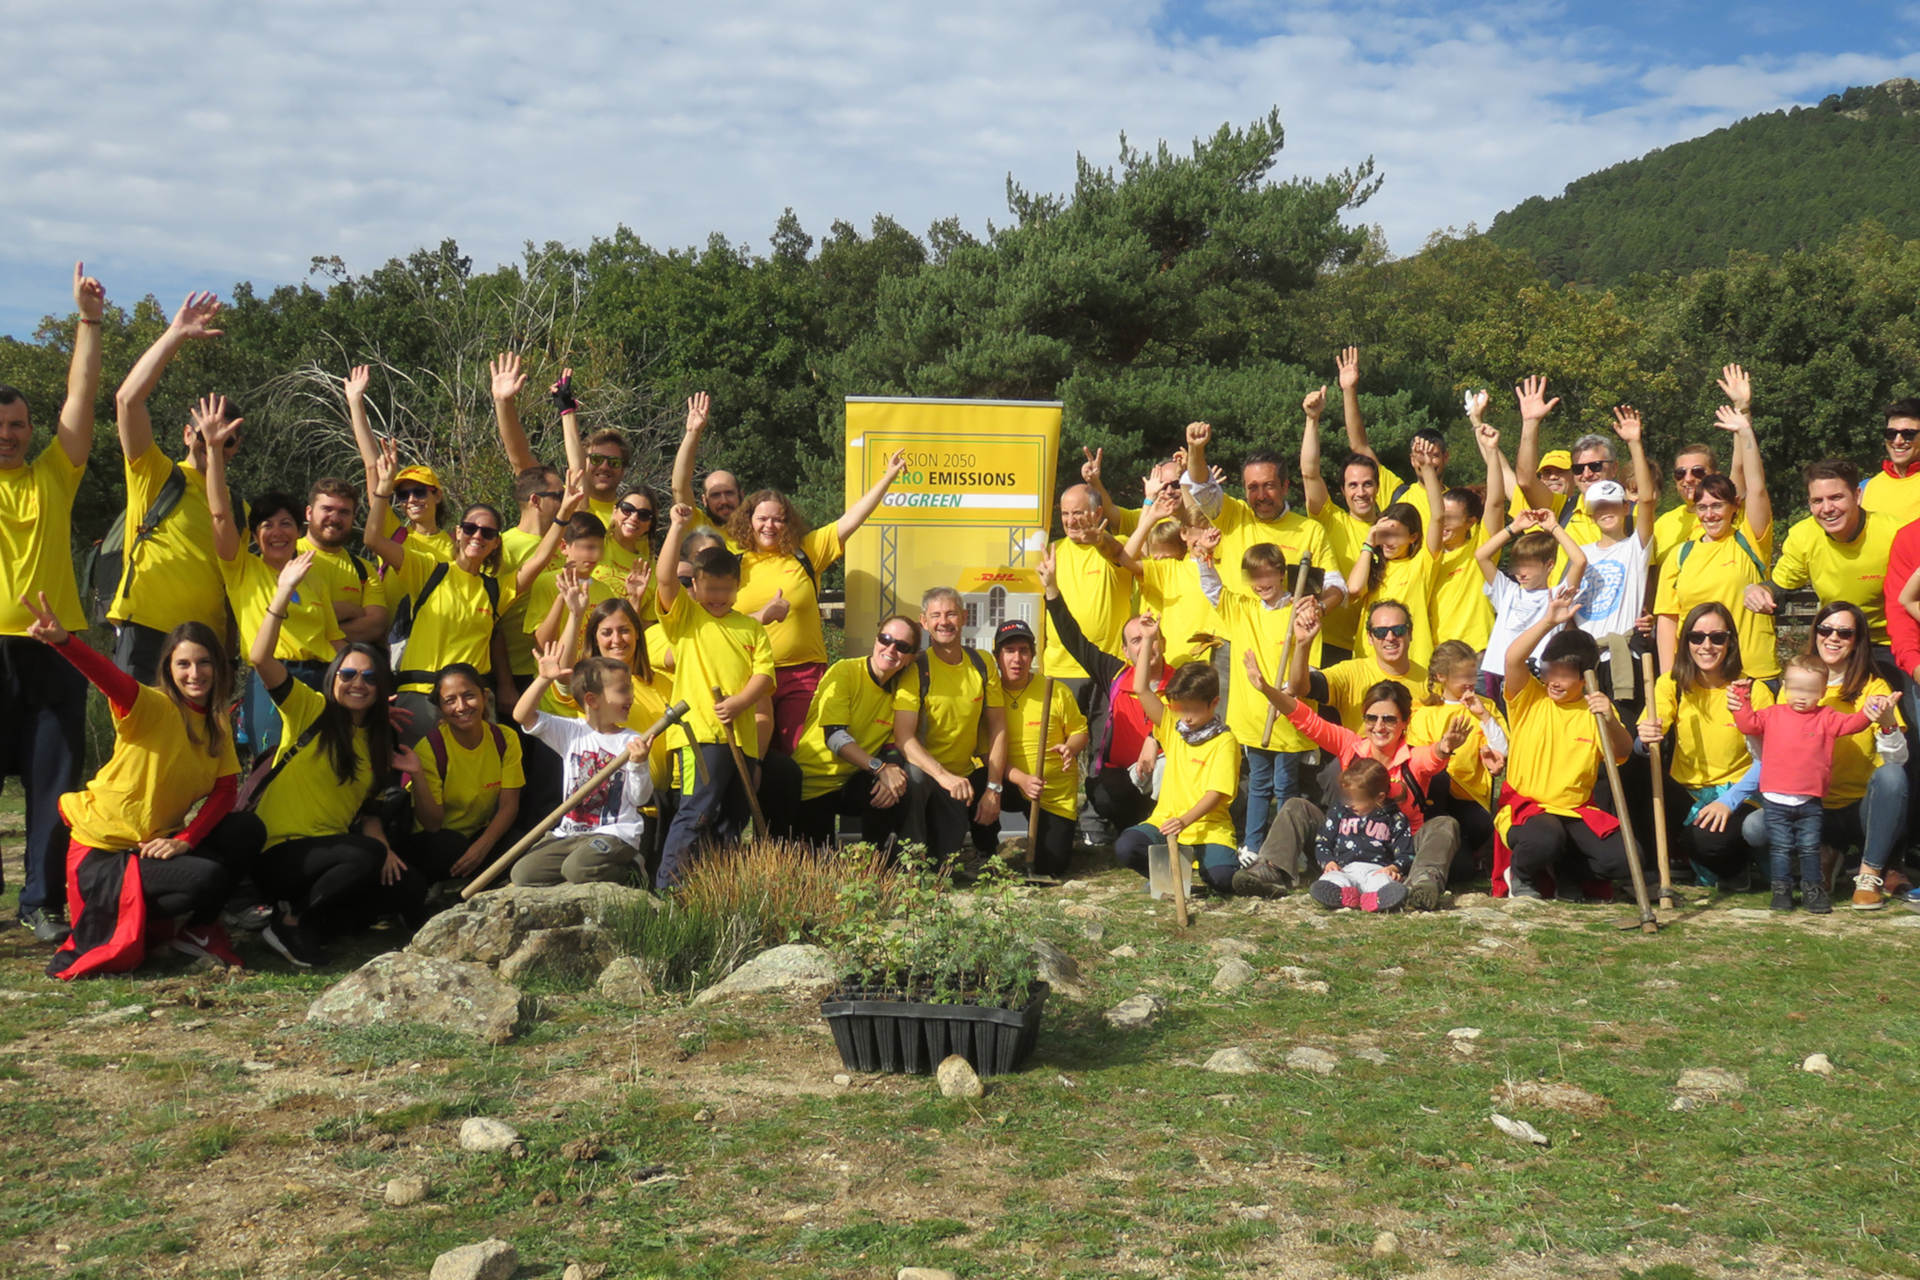 Reforesta acompaña a voluntarios de DHL en la plantación de árboles de Navacerrada para repoblar especies autóctonas. Octubre 2017